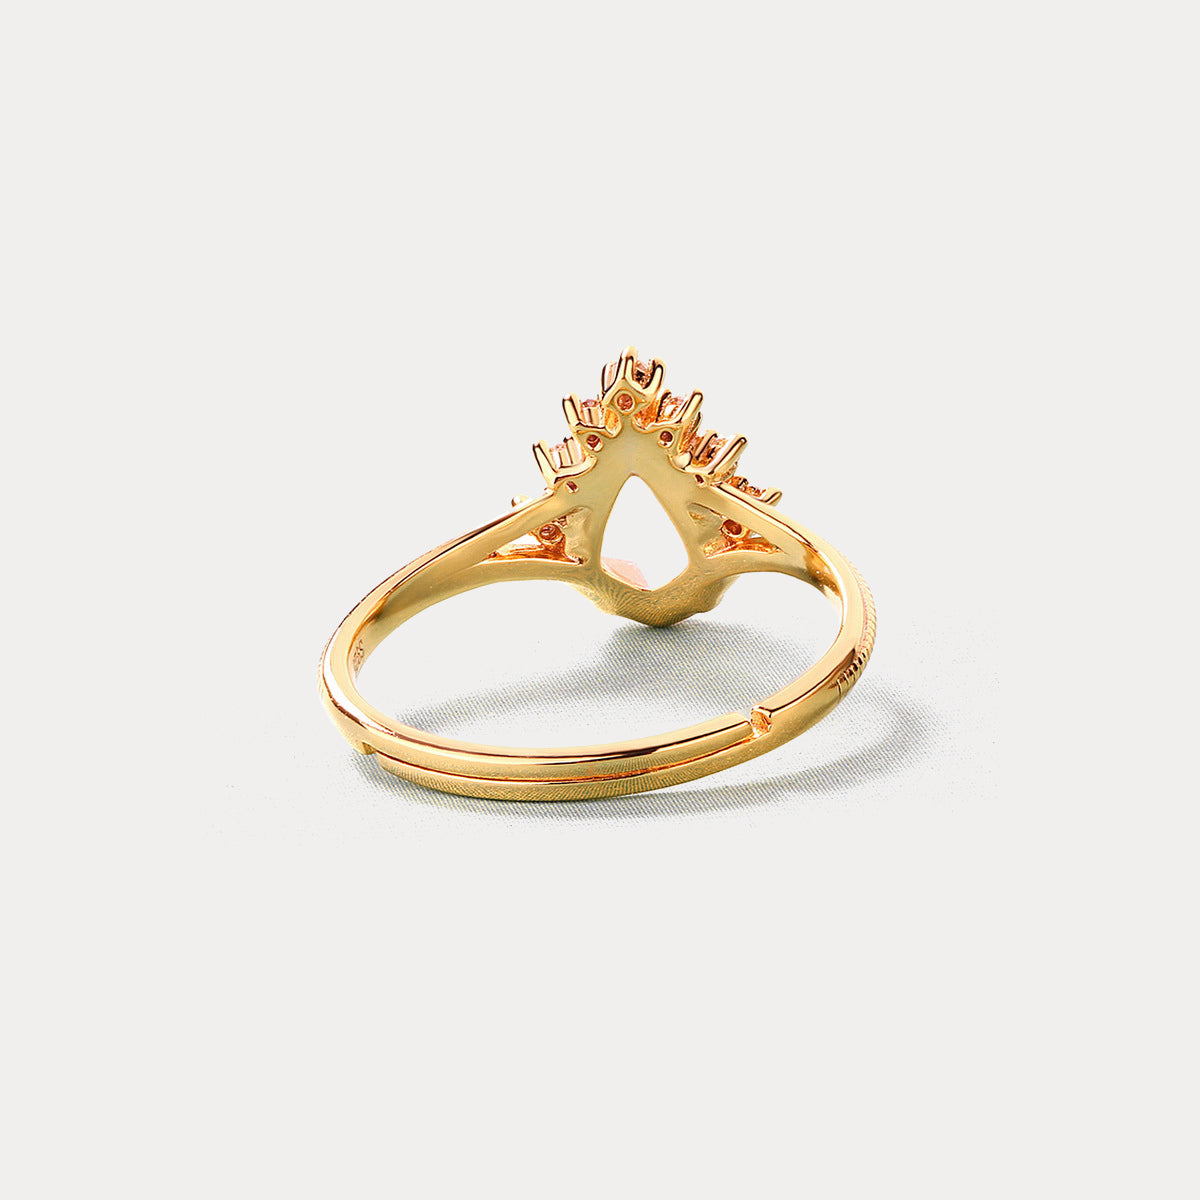 Rose Quartz Engagement Ring